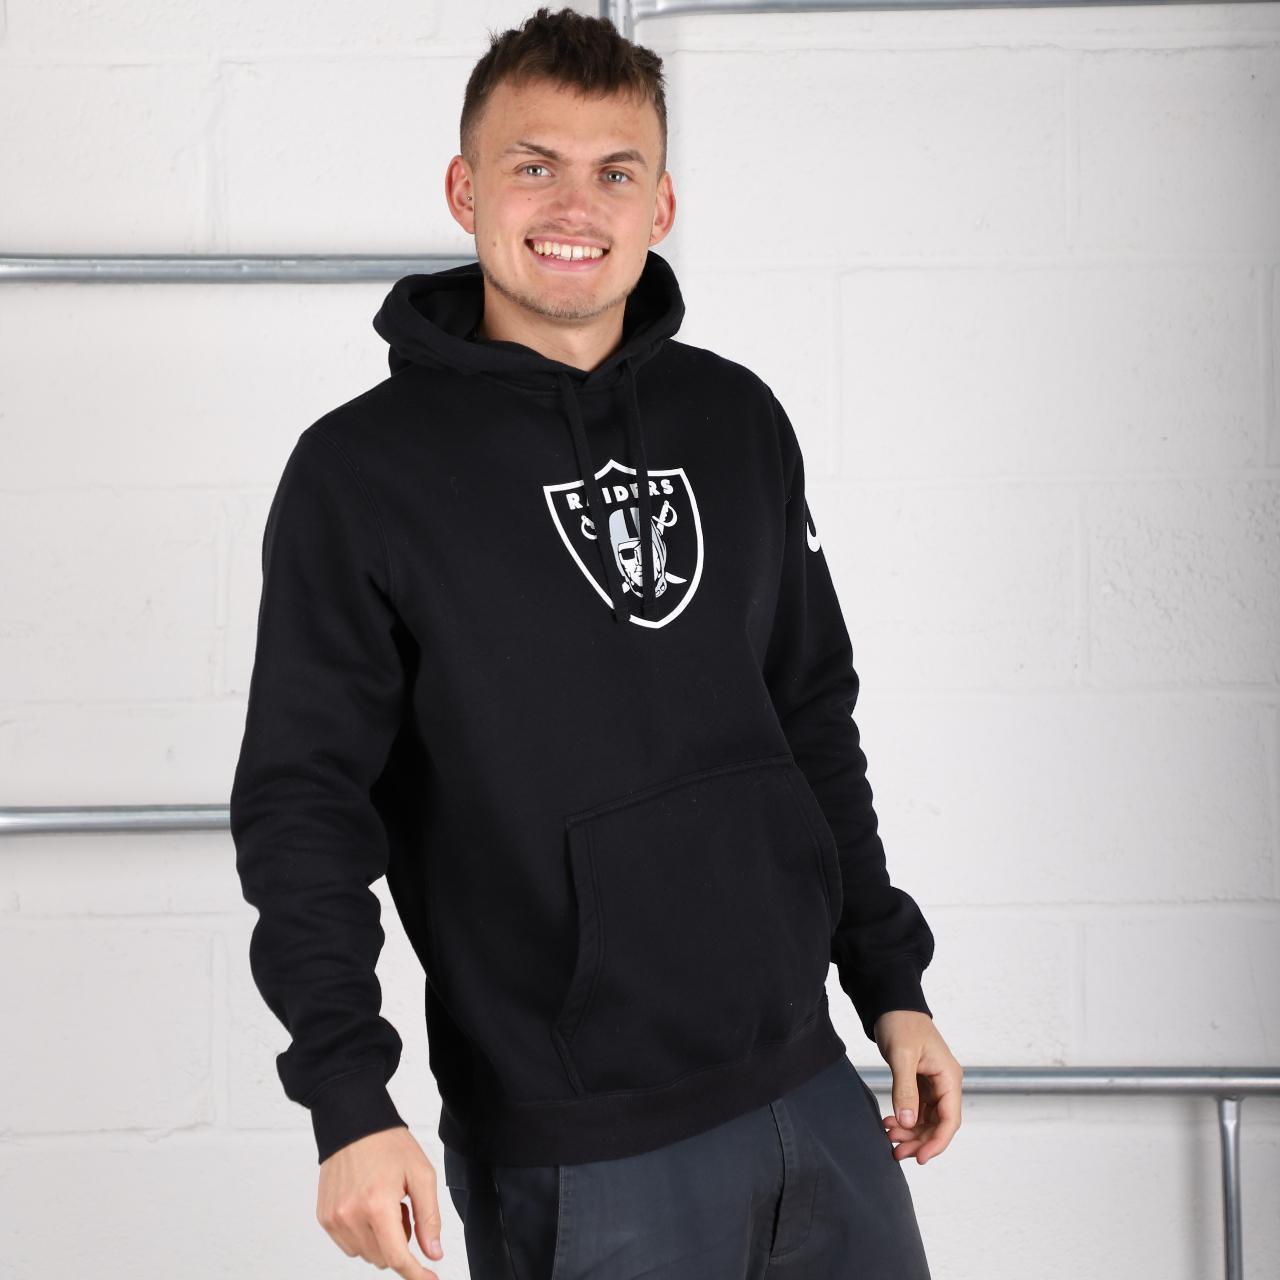 Nike Raiders hoodie in black with spell out logo. - Depop